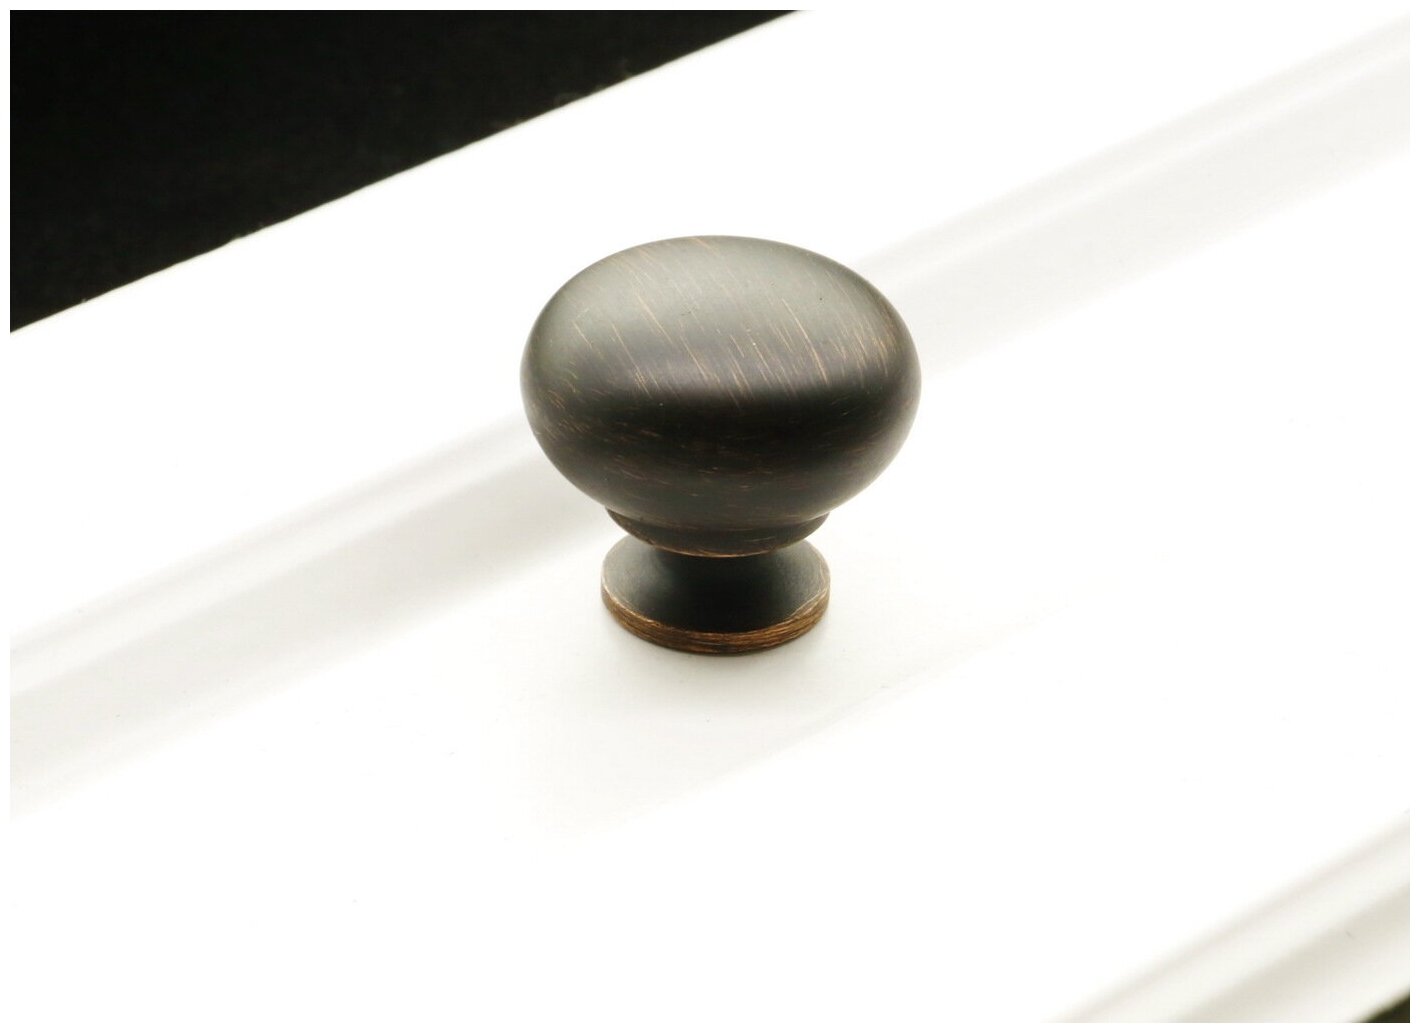 Ручка-кнопка для мебели 1шт, Inred IN.01.3033.0. BORB, цвет брашированная античная медь, ручка для шкафа, кухни, мебельная фурнитура